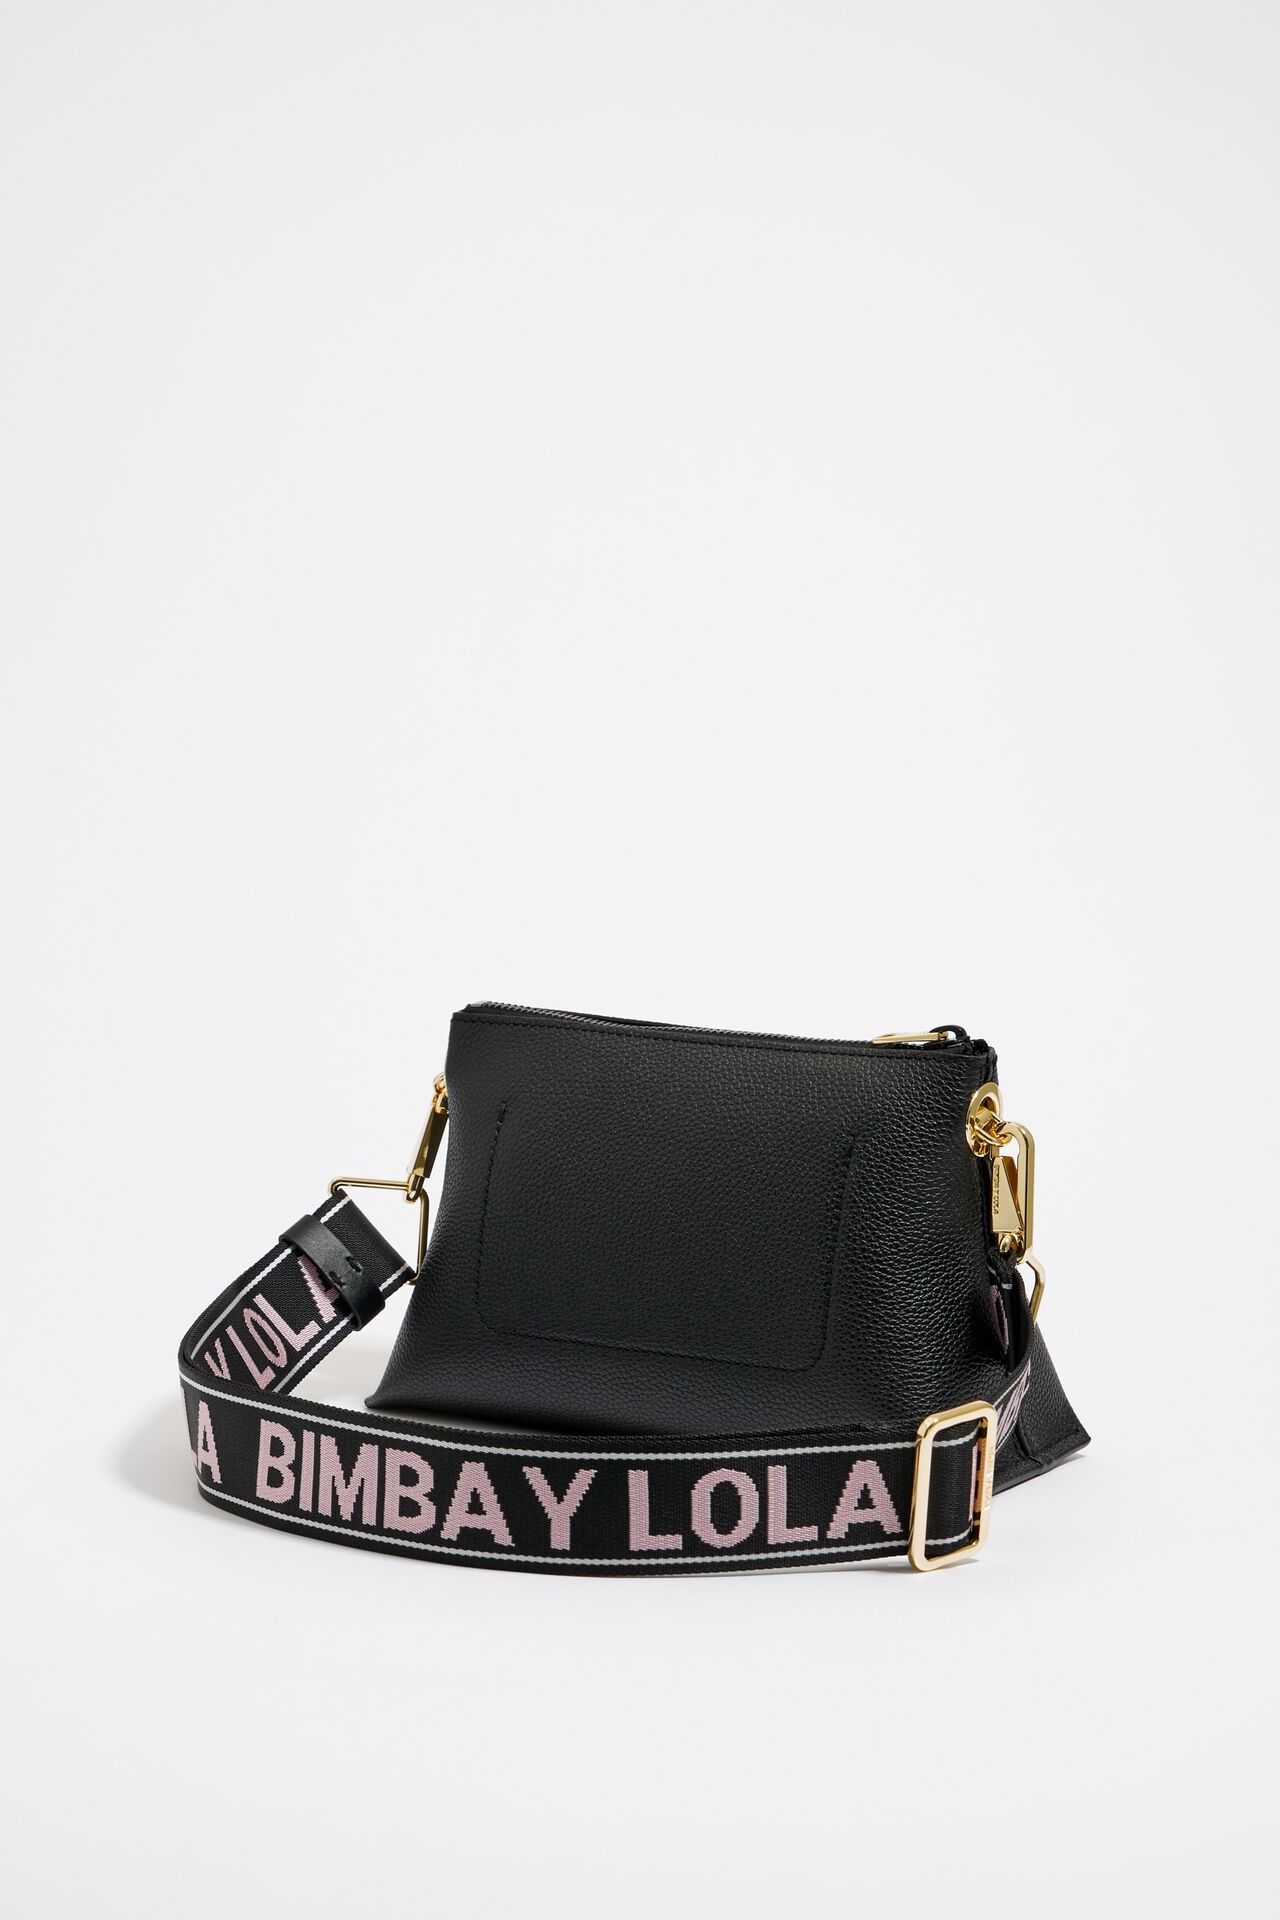 Bimba Y Lola Handbag in Black